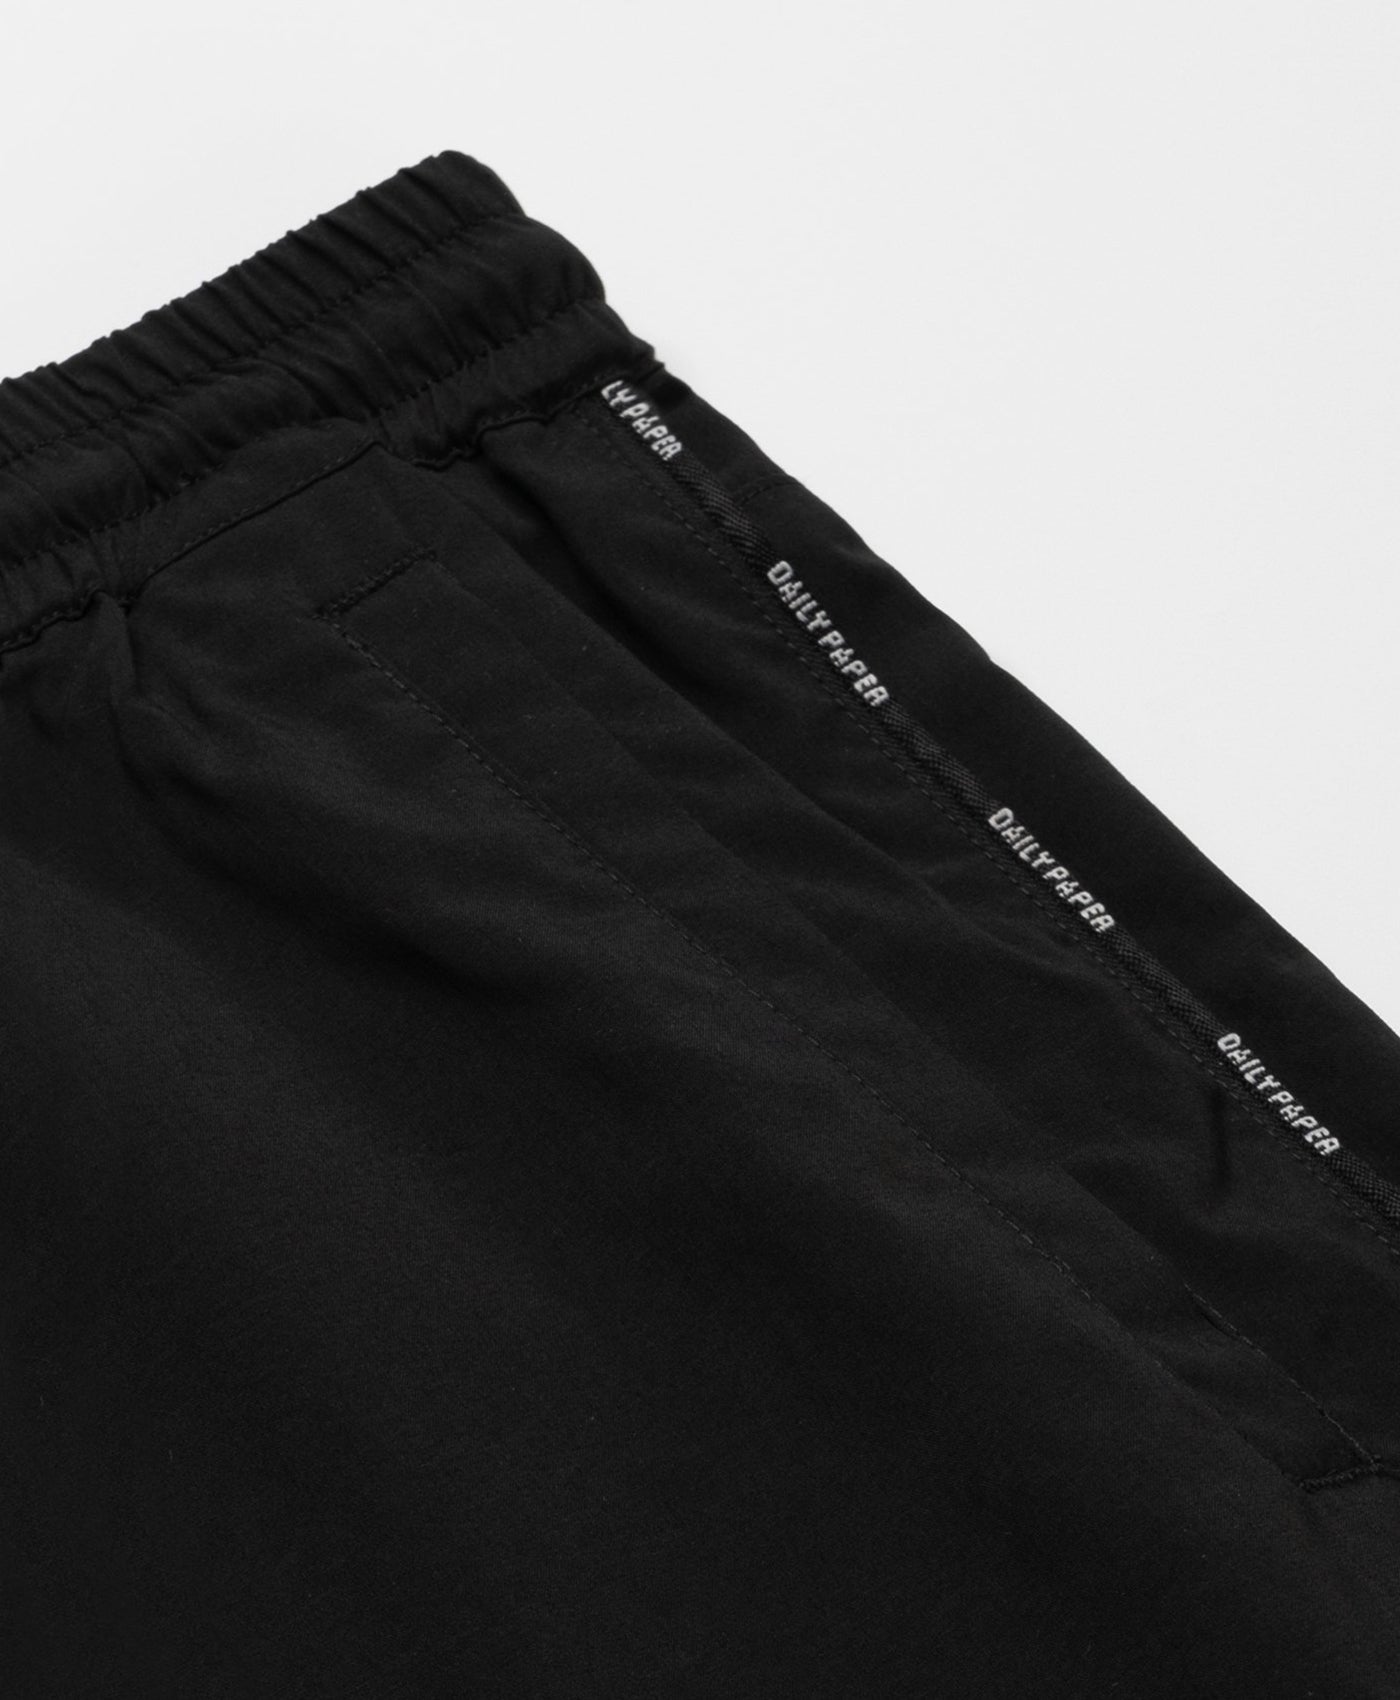 DP - Black Mehani Shorts - Packshot 